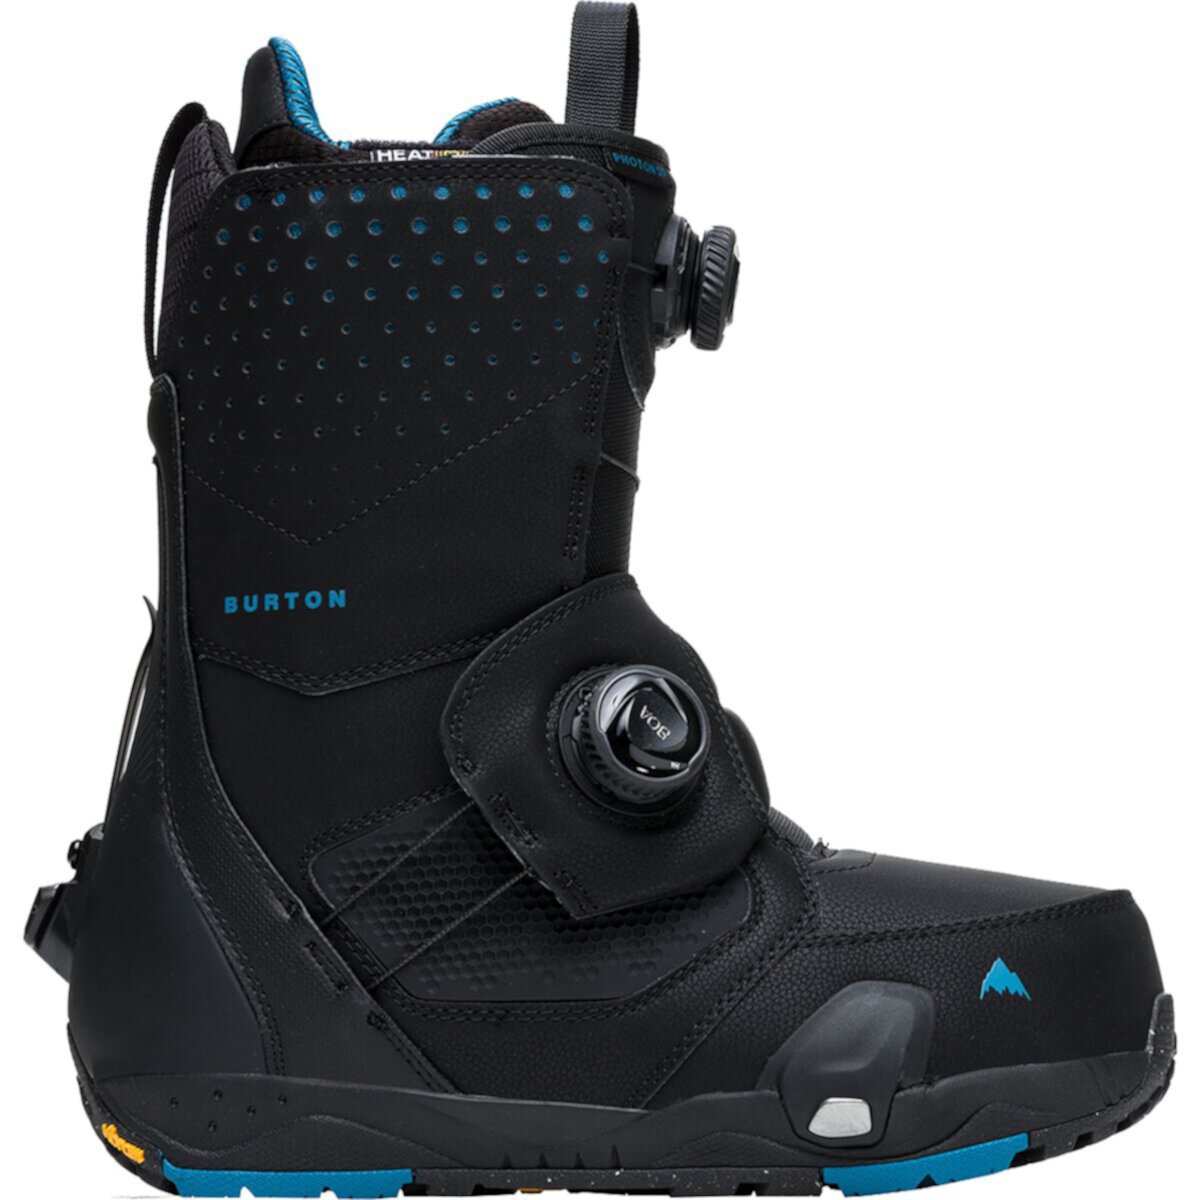 Ботинки для сноуборда Photon Step On Boa Wide - 2022 Burton